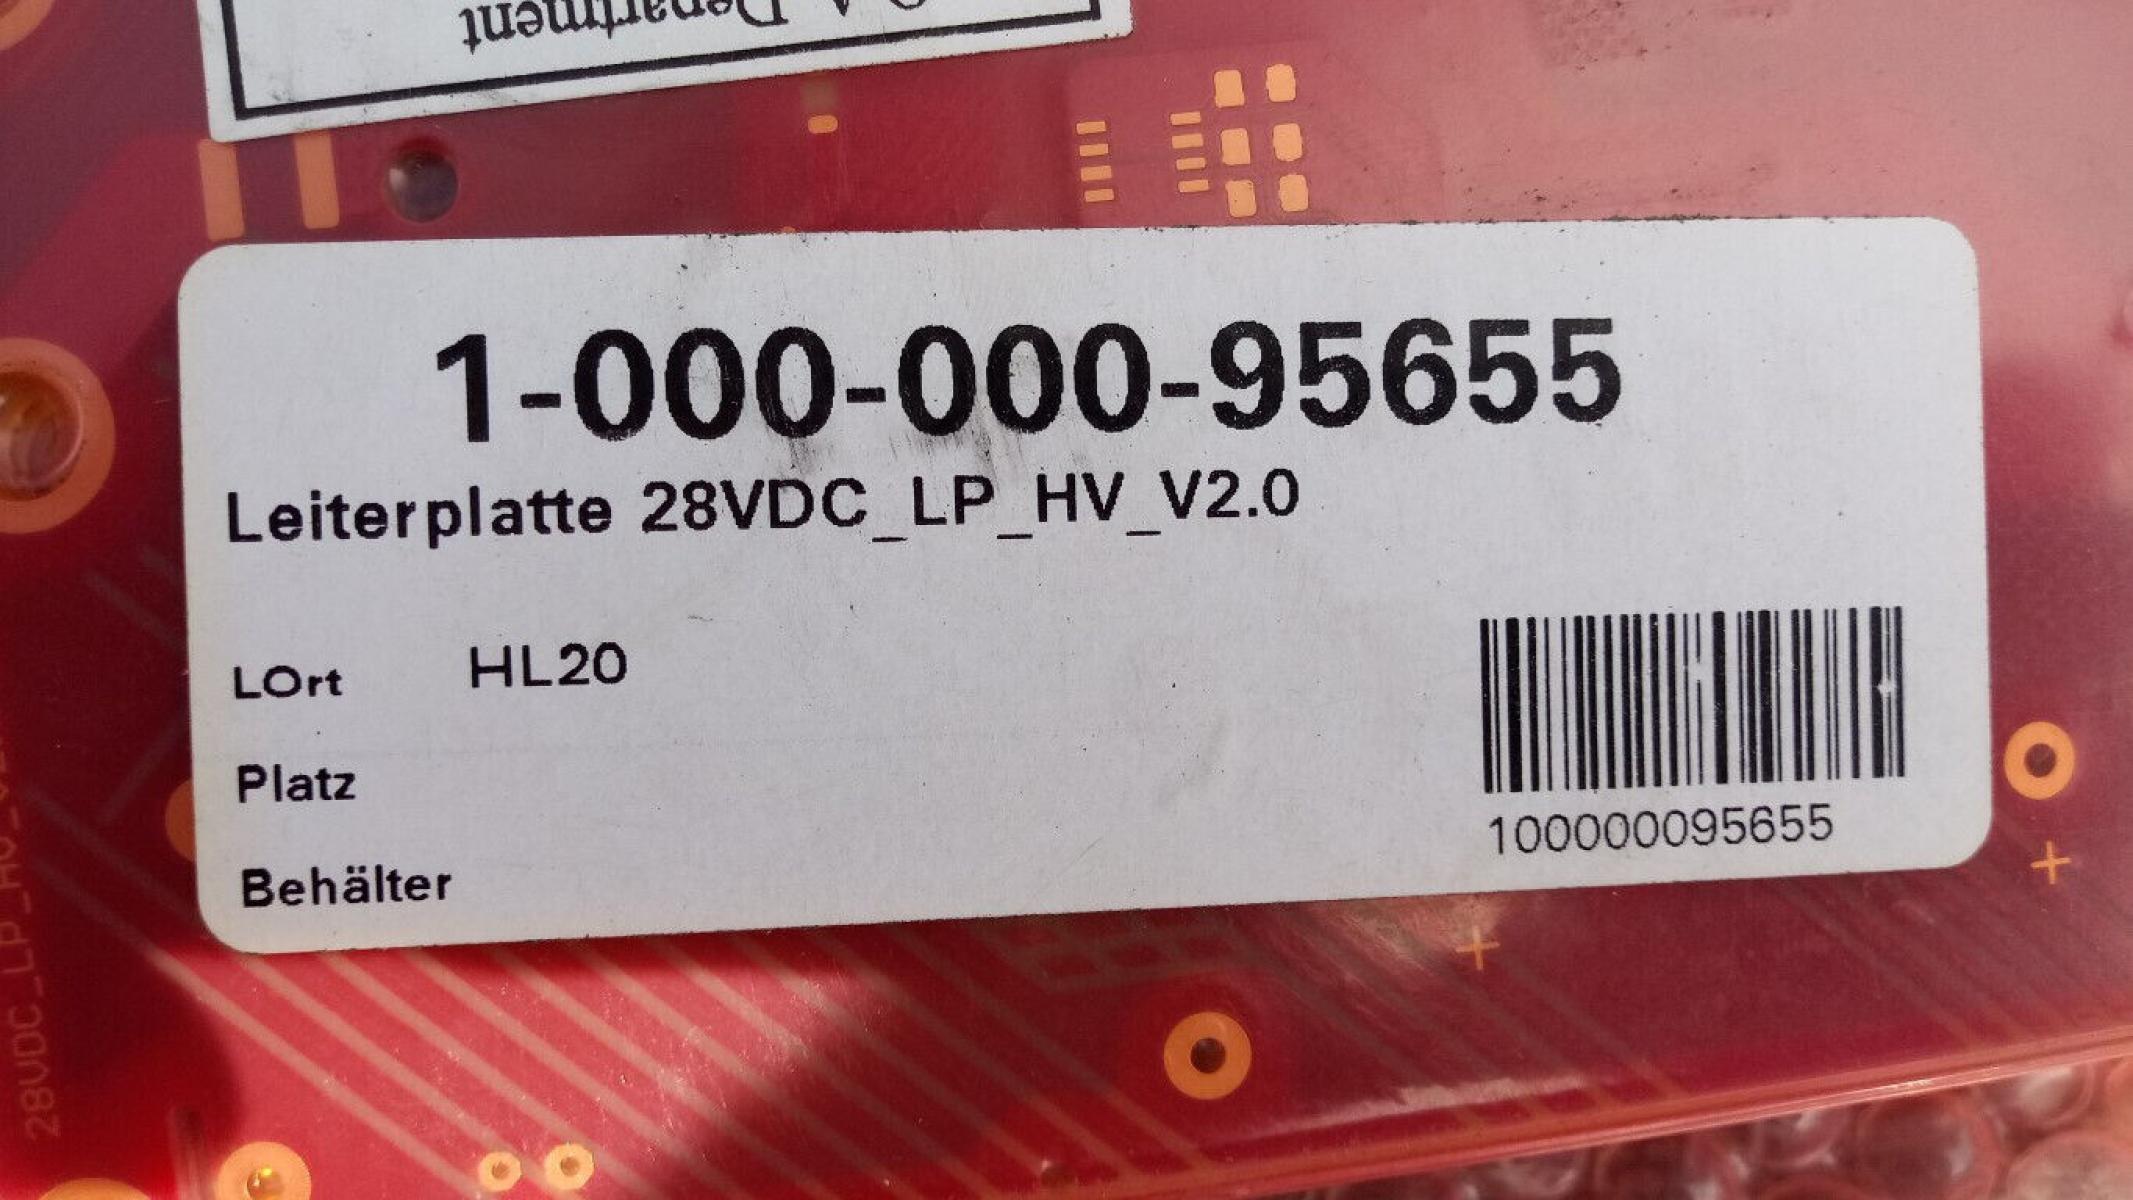 25 x Leiterplatten 28VDC LP HV V2.0, € 29,- (8130 Frohnleiten)